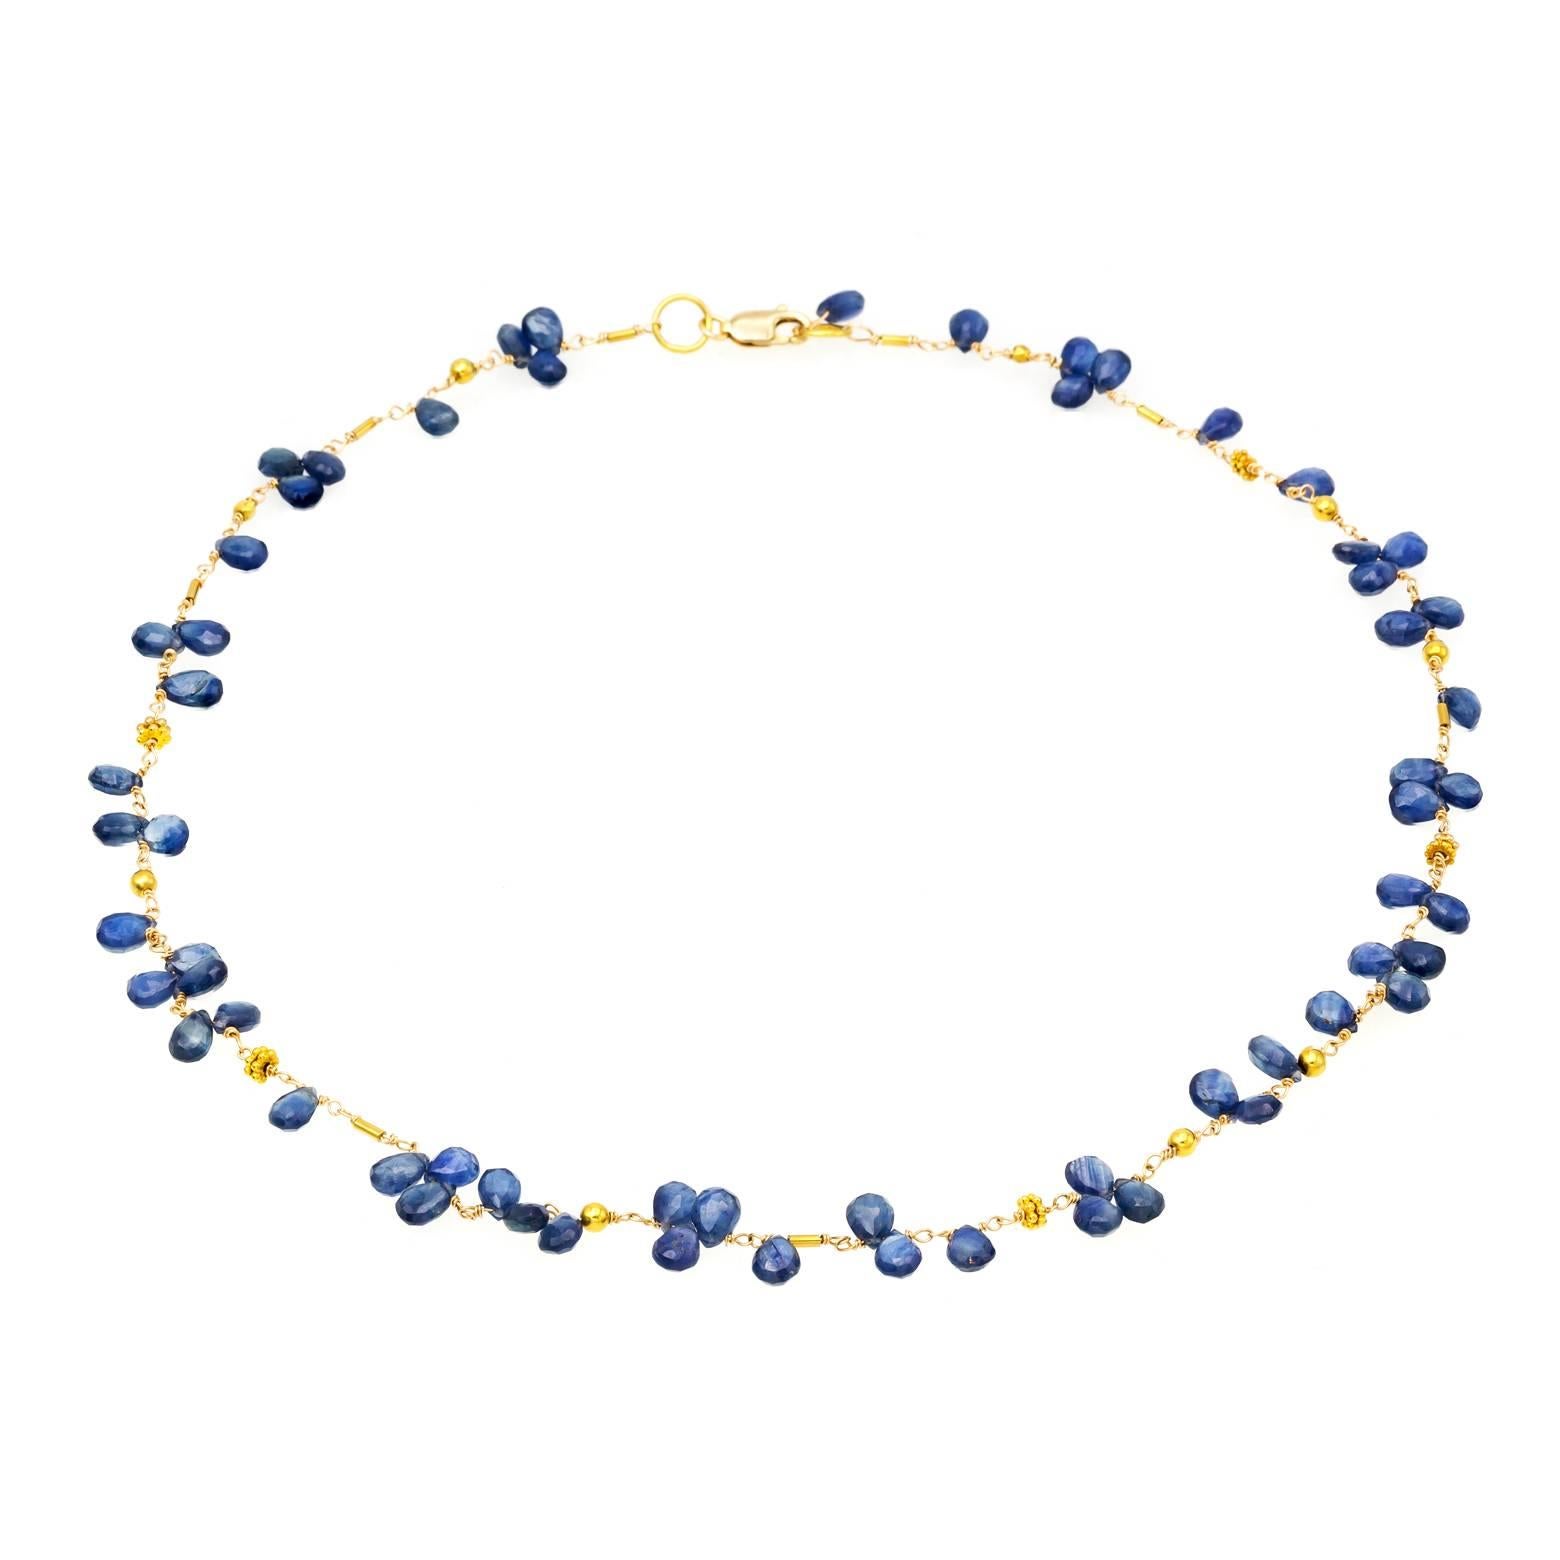 Blue Sapphire Briolette Necklace in 18 Karat Yellow Gold